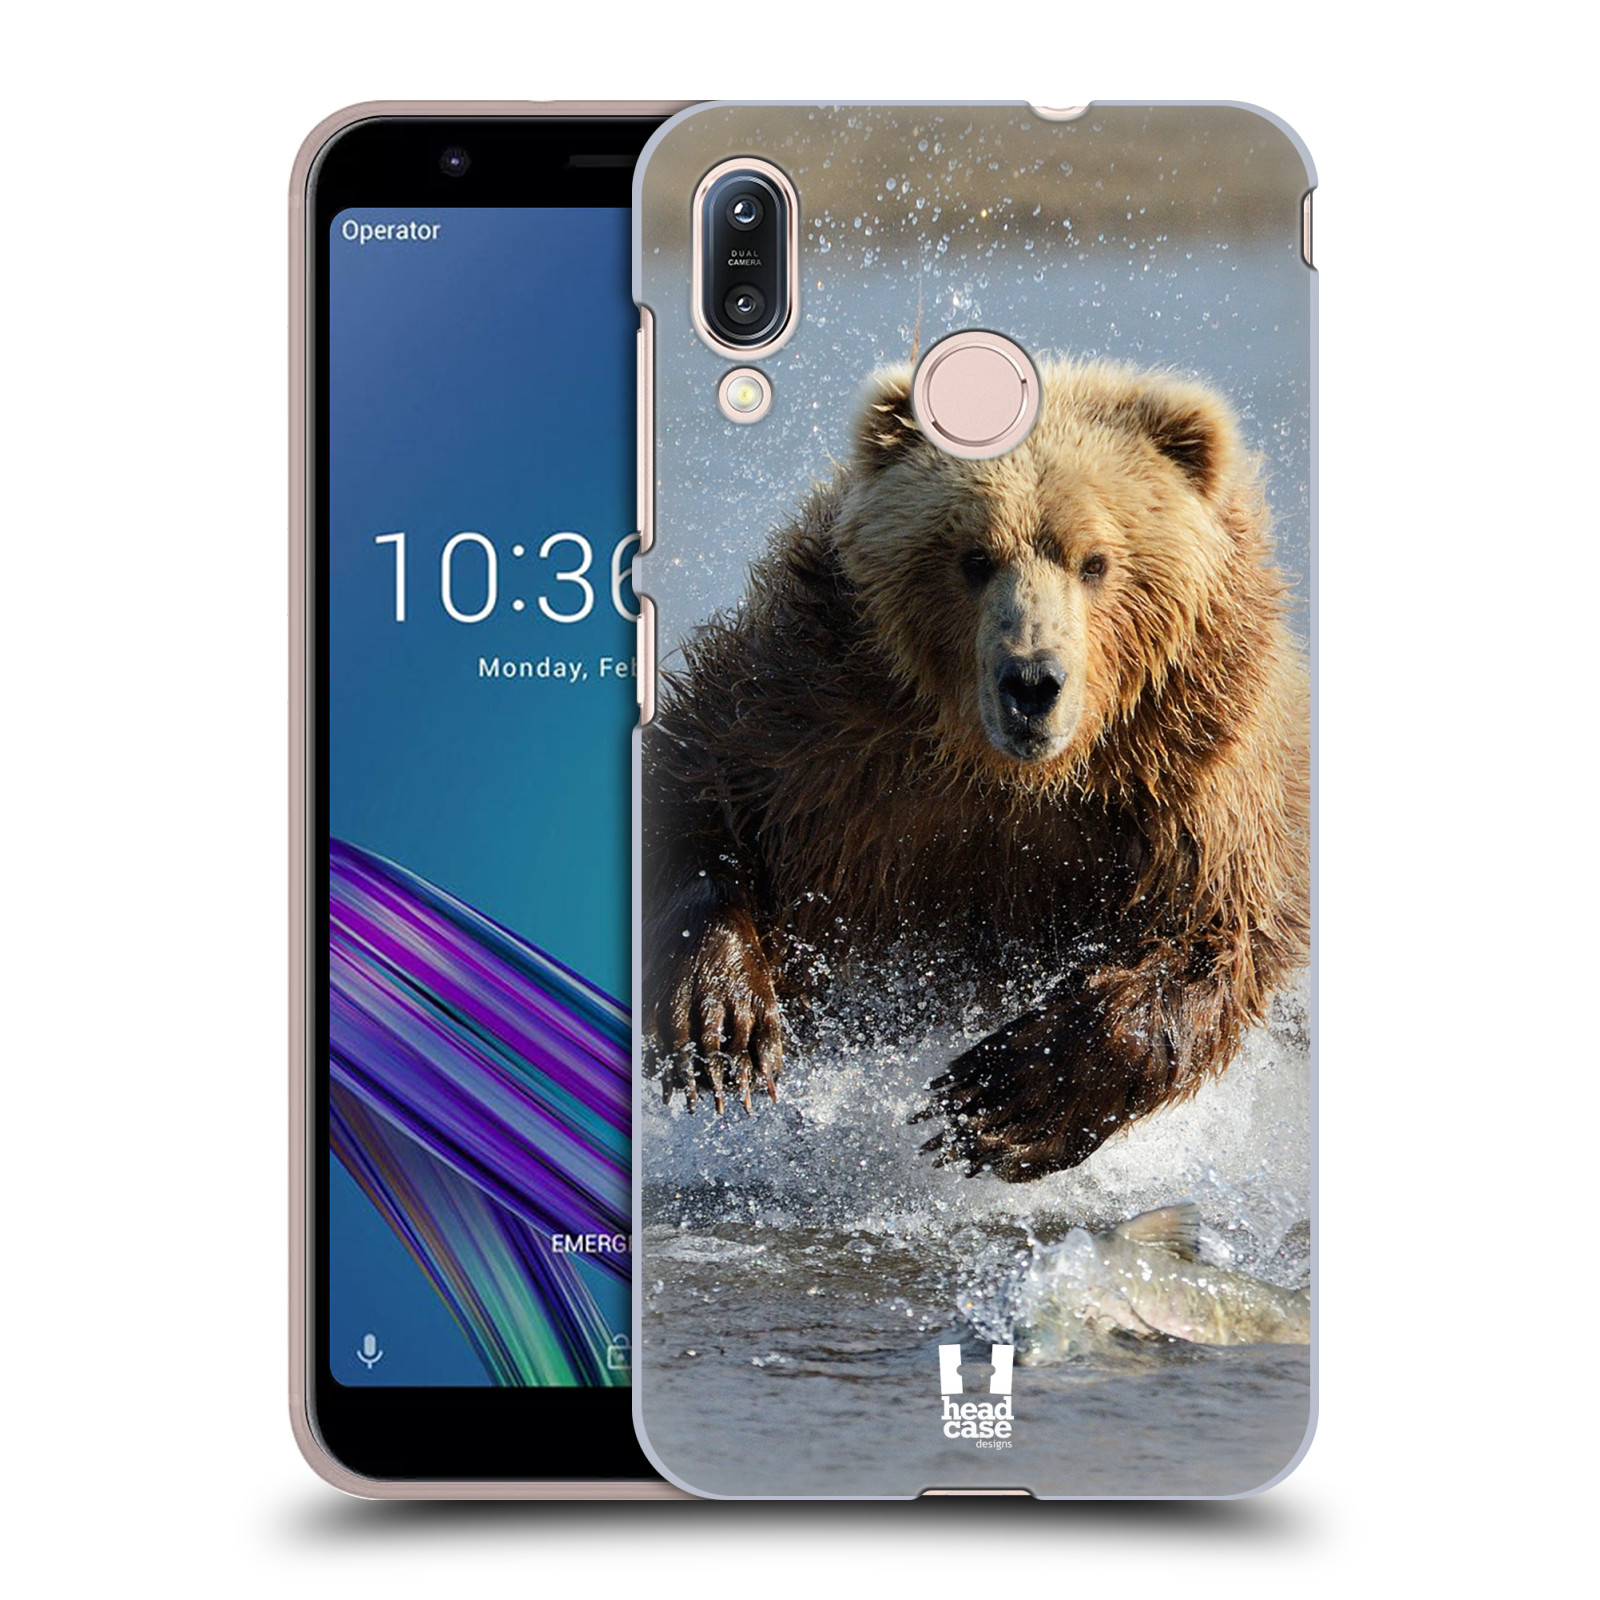 Pouzdro na mobil Asus Zenfone Max M1 (ZB555KL) - HEAD CASE - vzor Divočina, Divoký život a zvířata foto MEDVĚD GRIZZLY HŇEDÁ